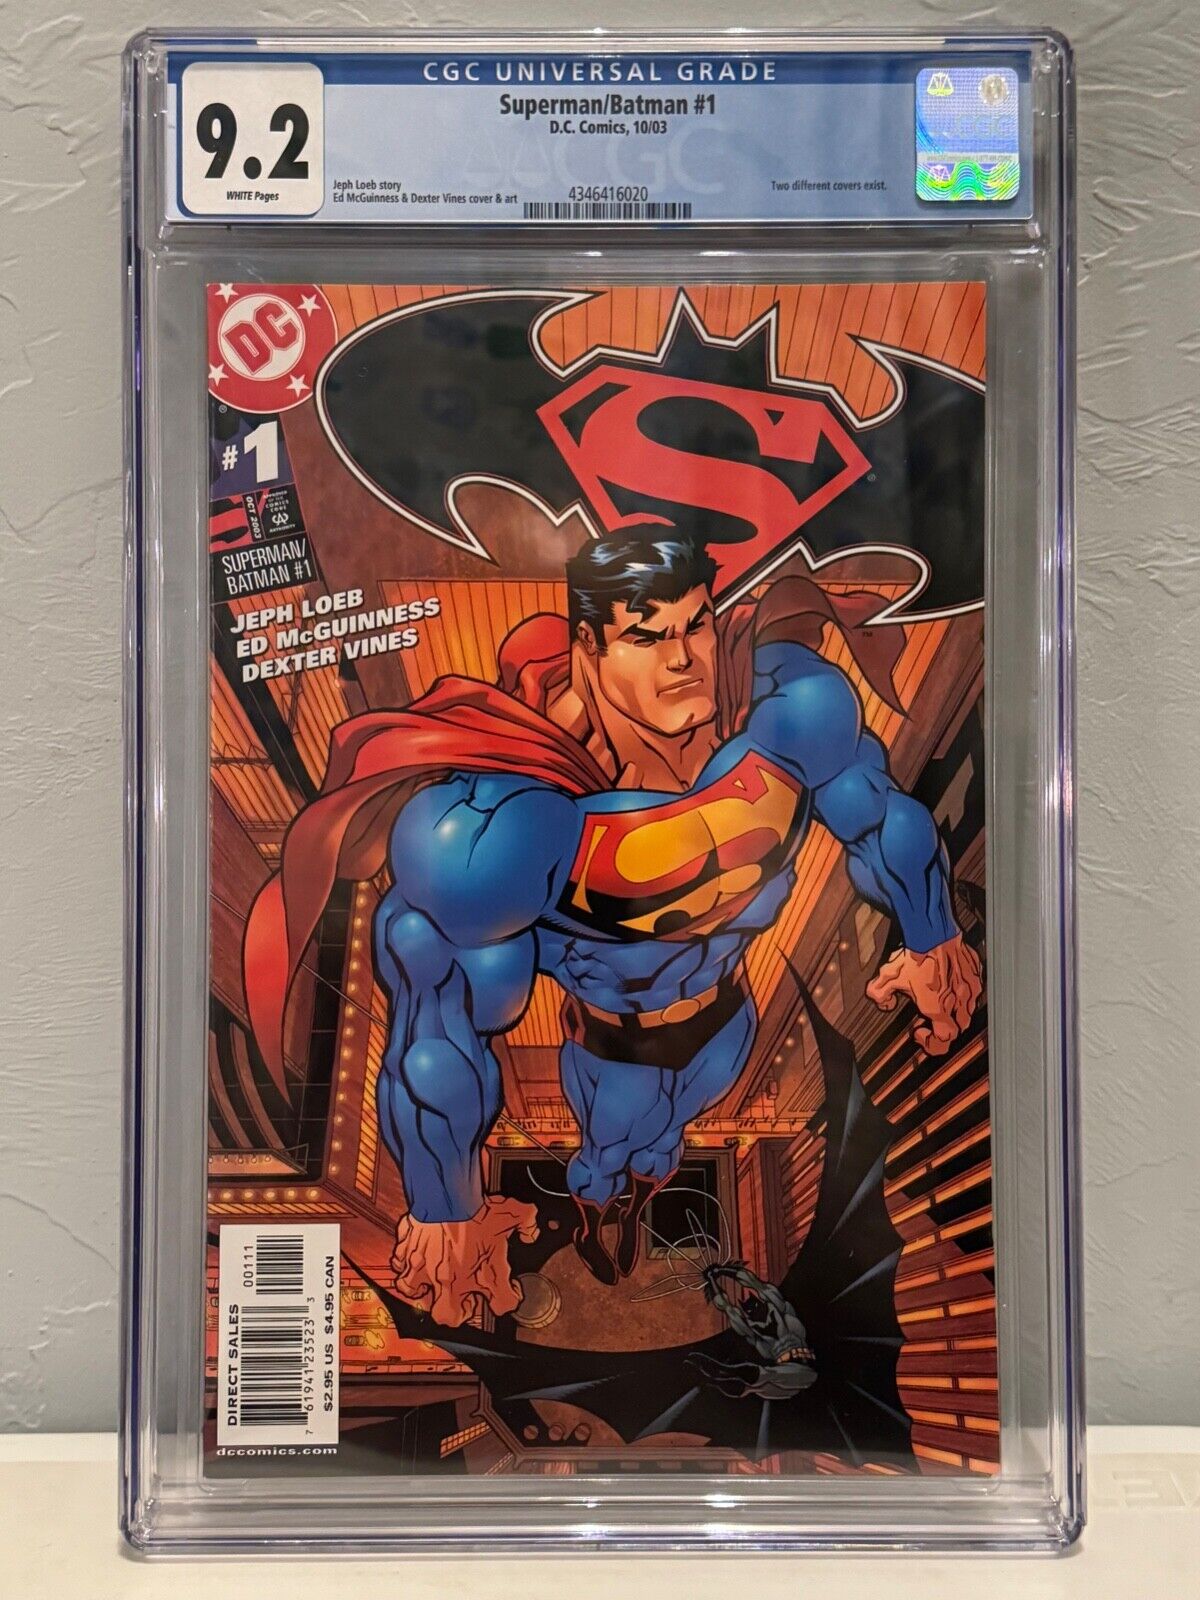 Superman/Batman #1 variant (2003) CGC 9.2 D.C. Comics. White pages